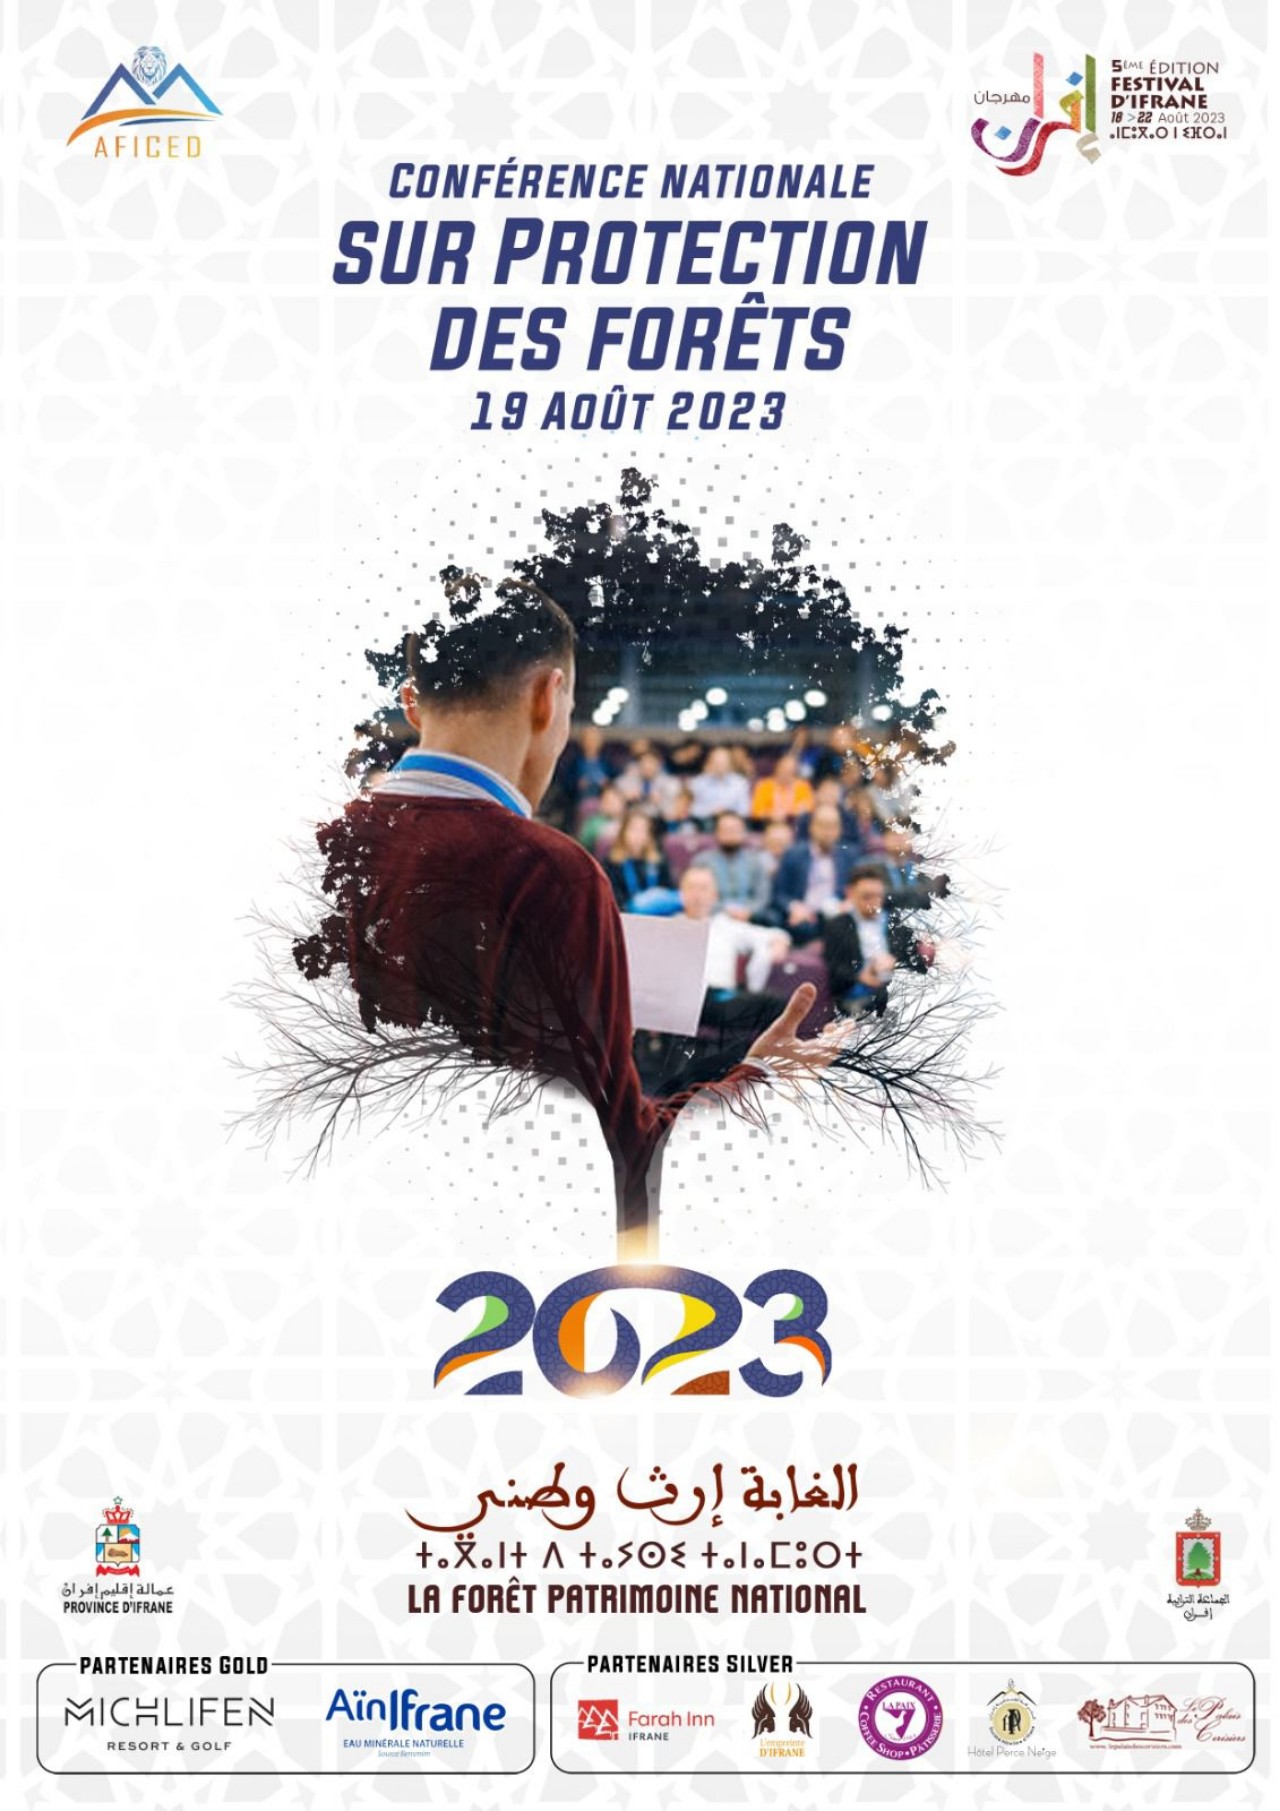 "الغابة إرث وطني" شعار النسخة الخامسة لمهرجان إفران الدولي